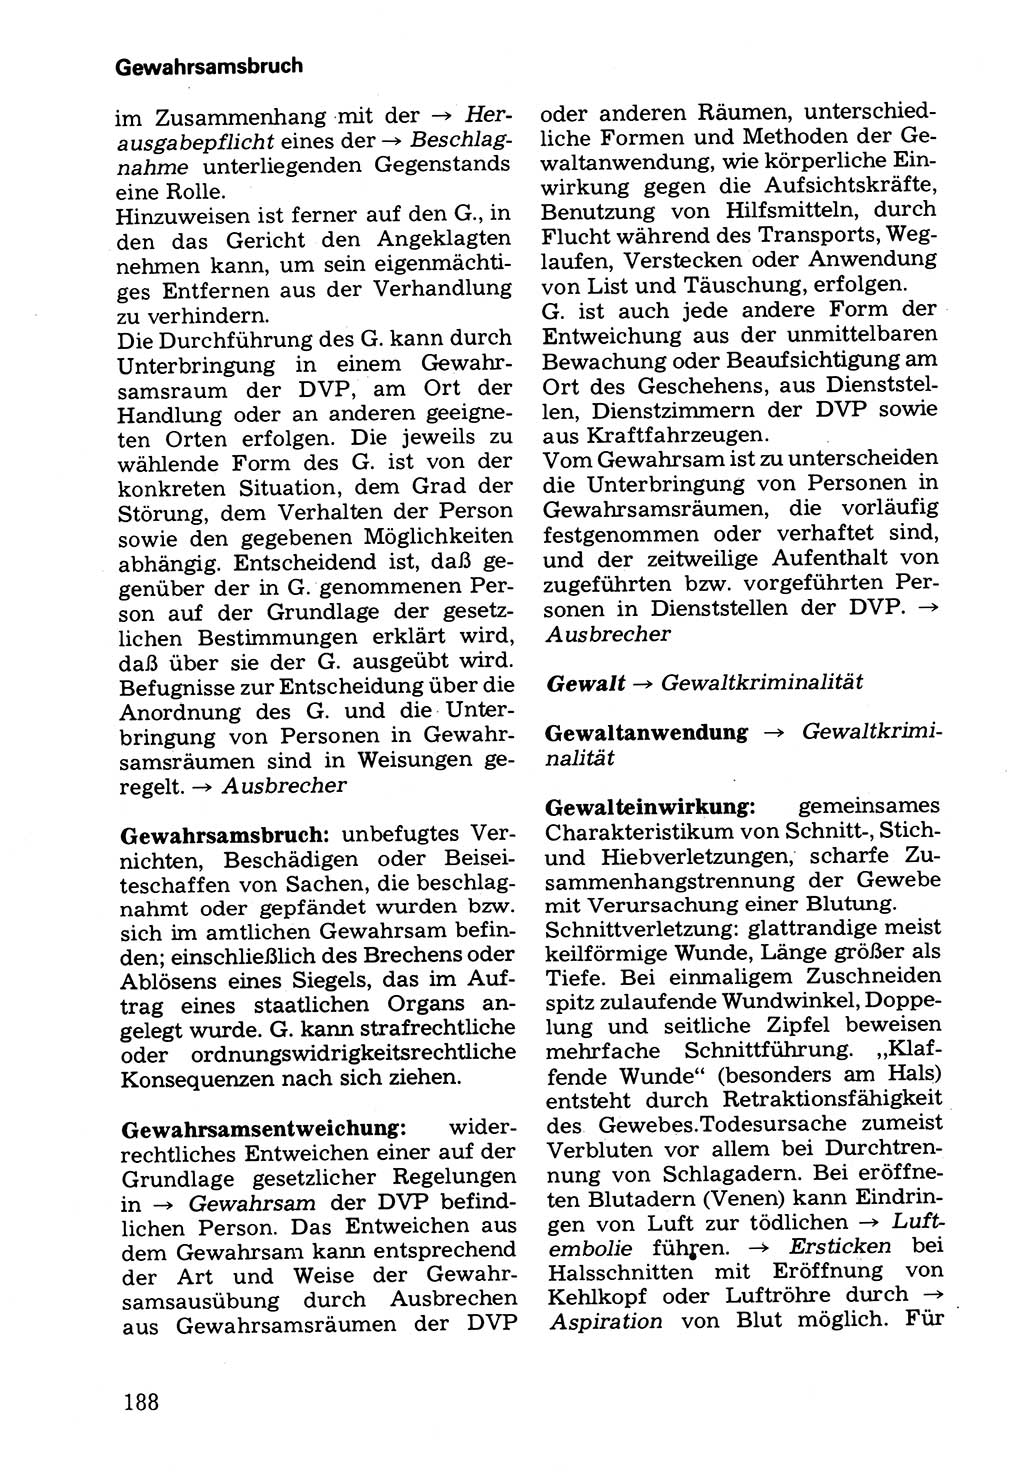 Wörterbuch der sozialistischen Kriminalistik [Deutsche Demokratische Republik (DDR)] 1981, Seite 188 (Wb. soz. Krim. DDR 1981, S. 188)